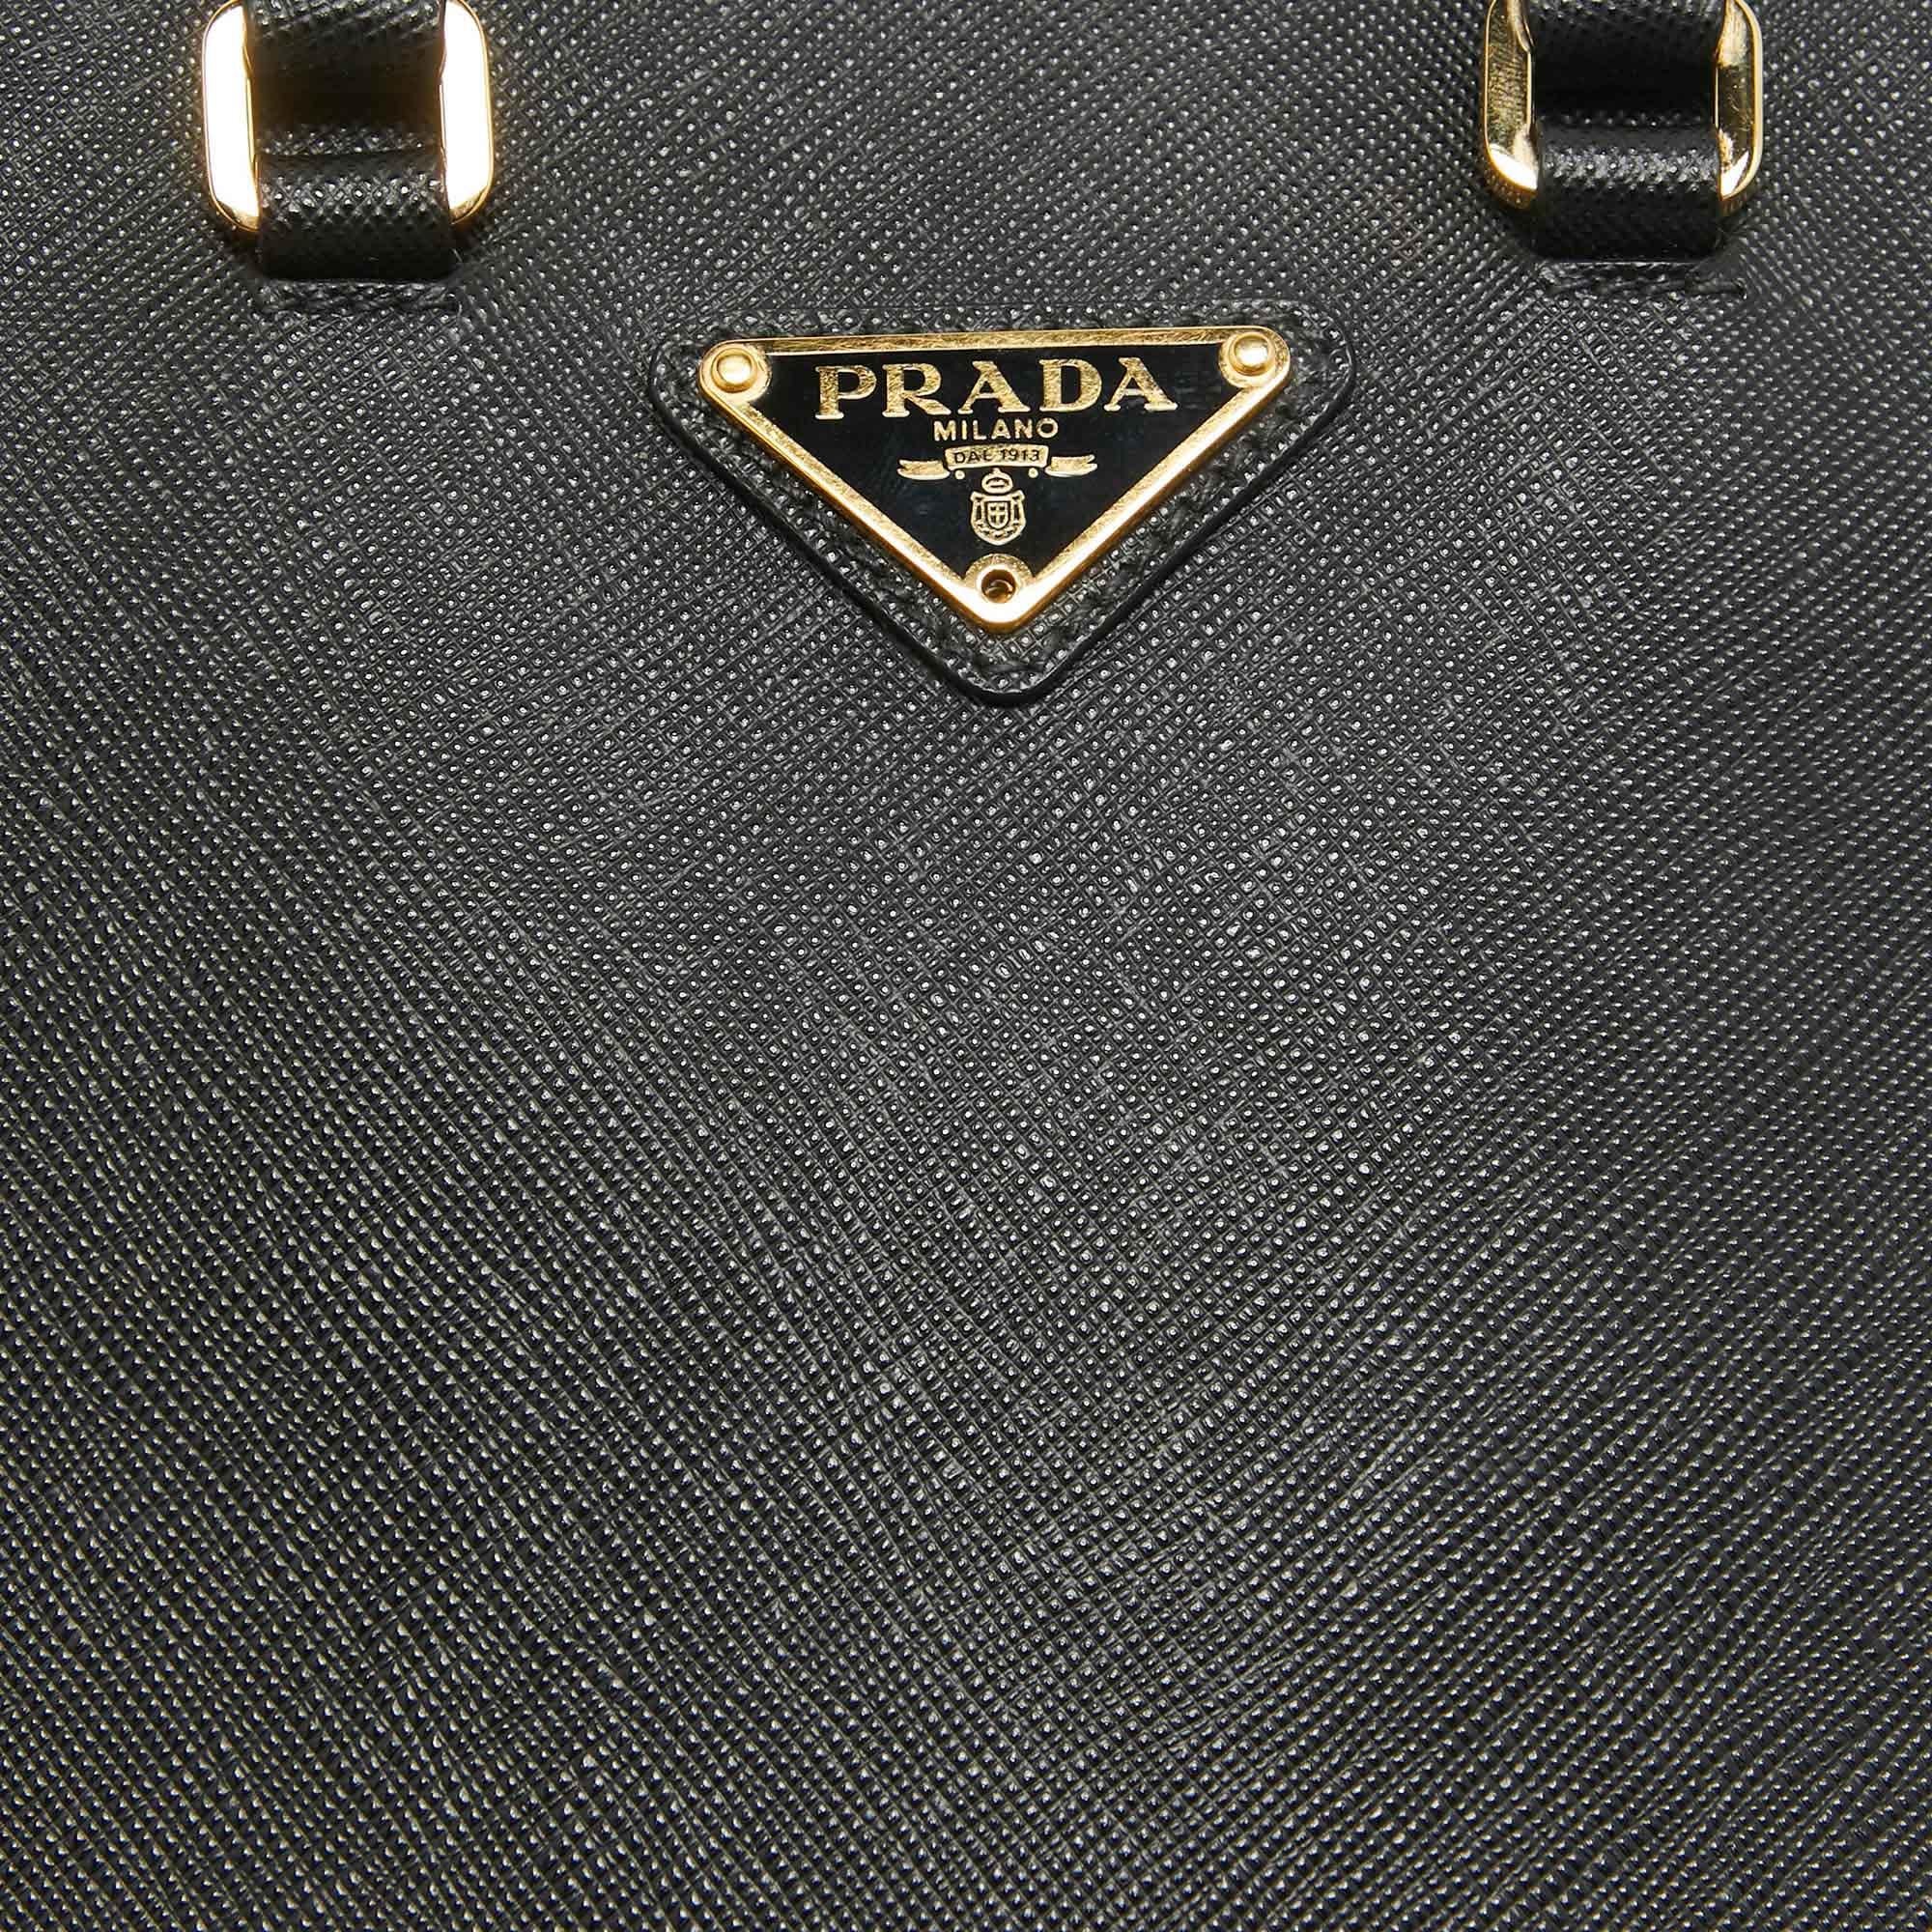 Prada Black Saffiano Lux Leather Small Tote For Sale 3